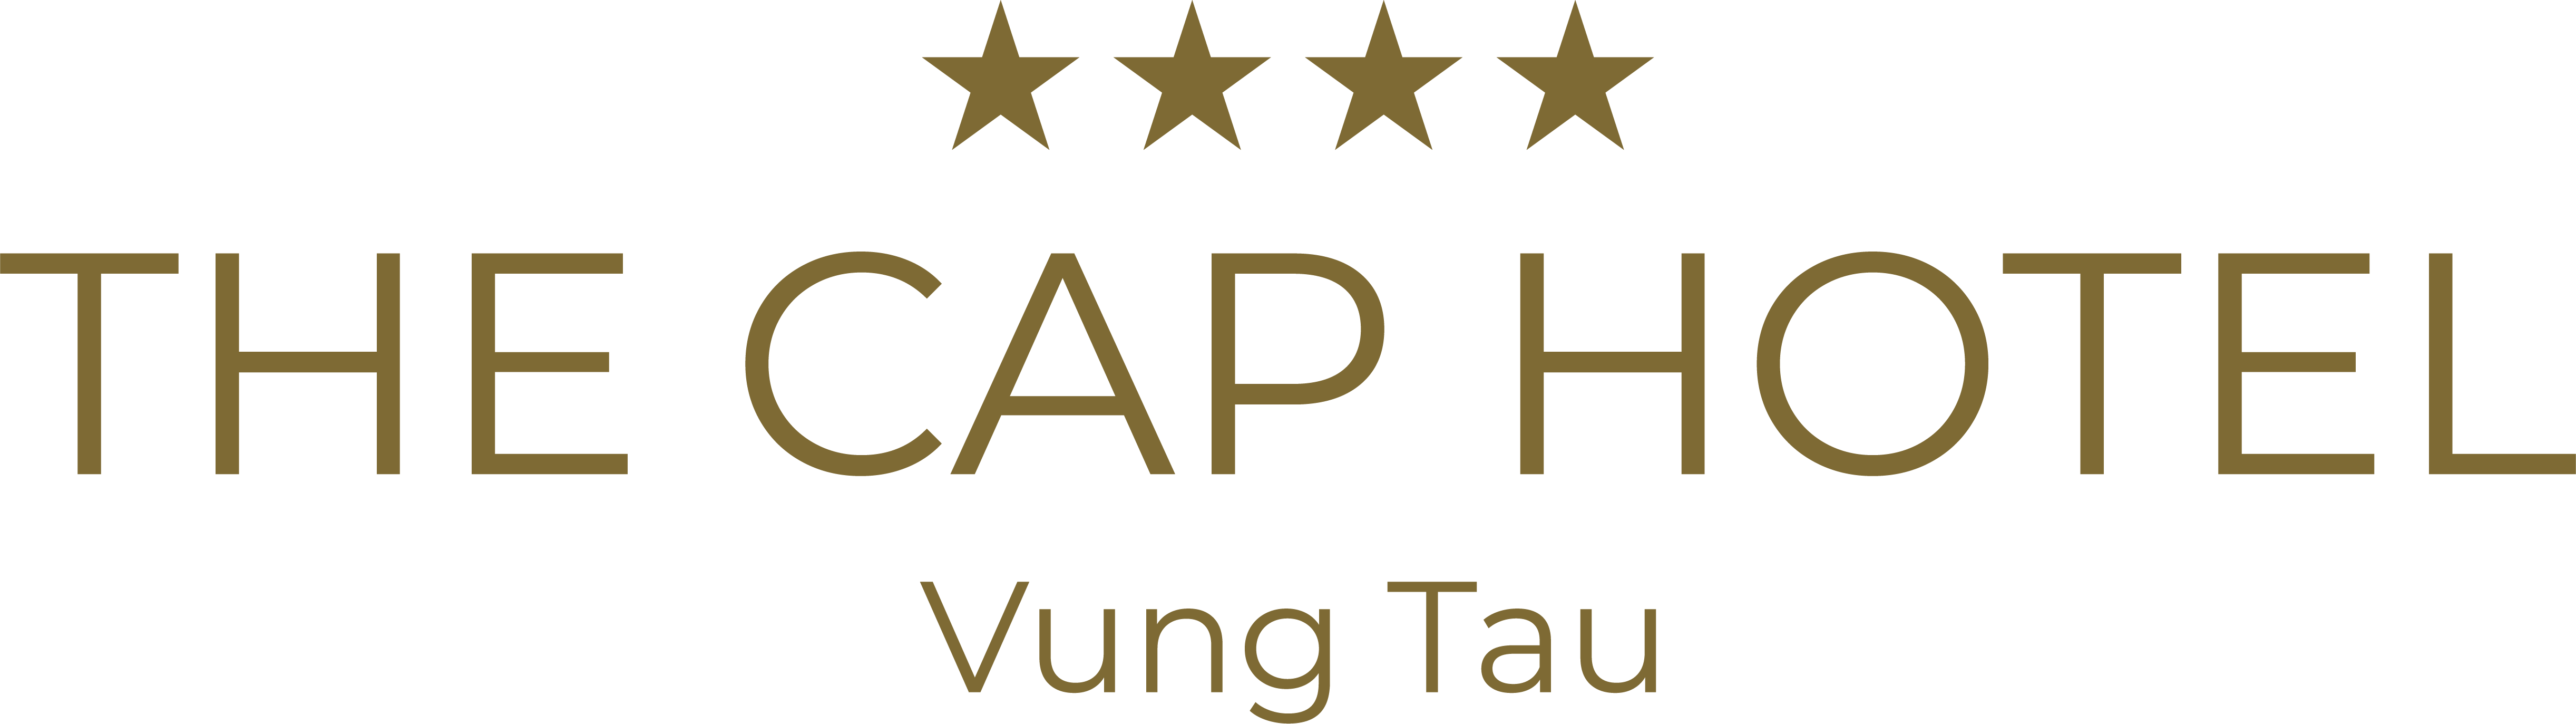 The Cap Hotel